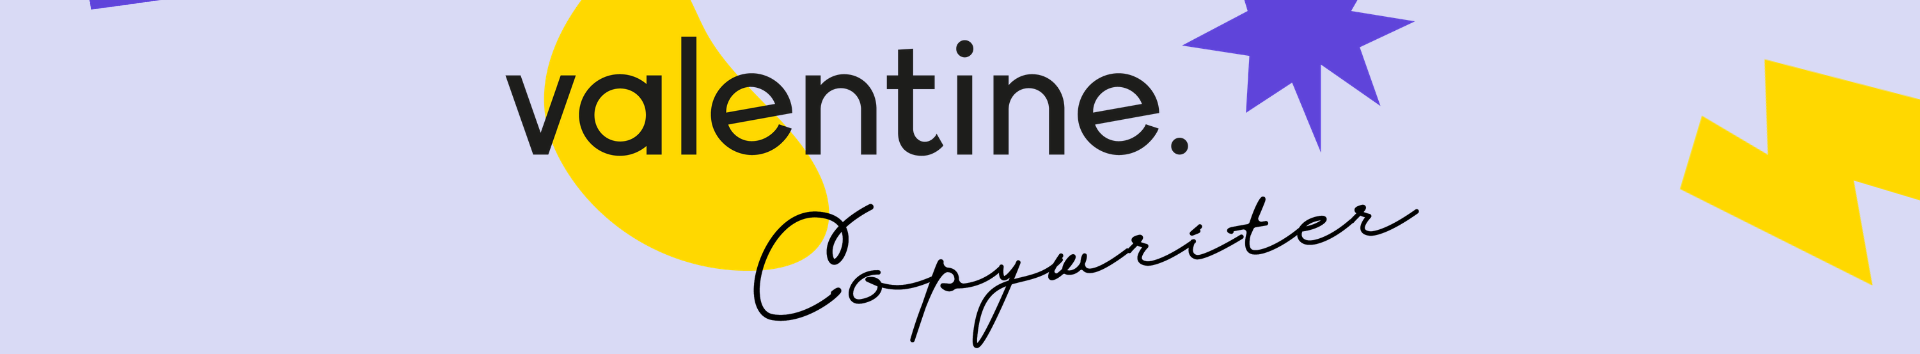 Valentine Thomasset-Schanke's profile banner